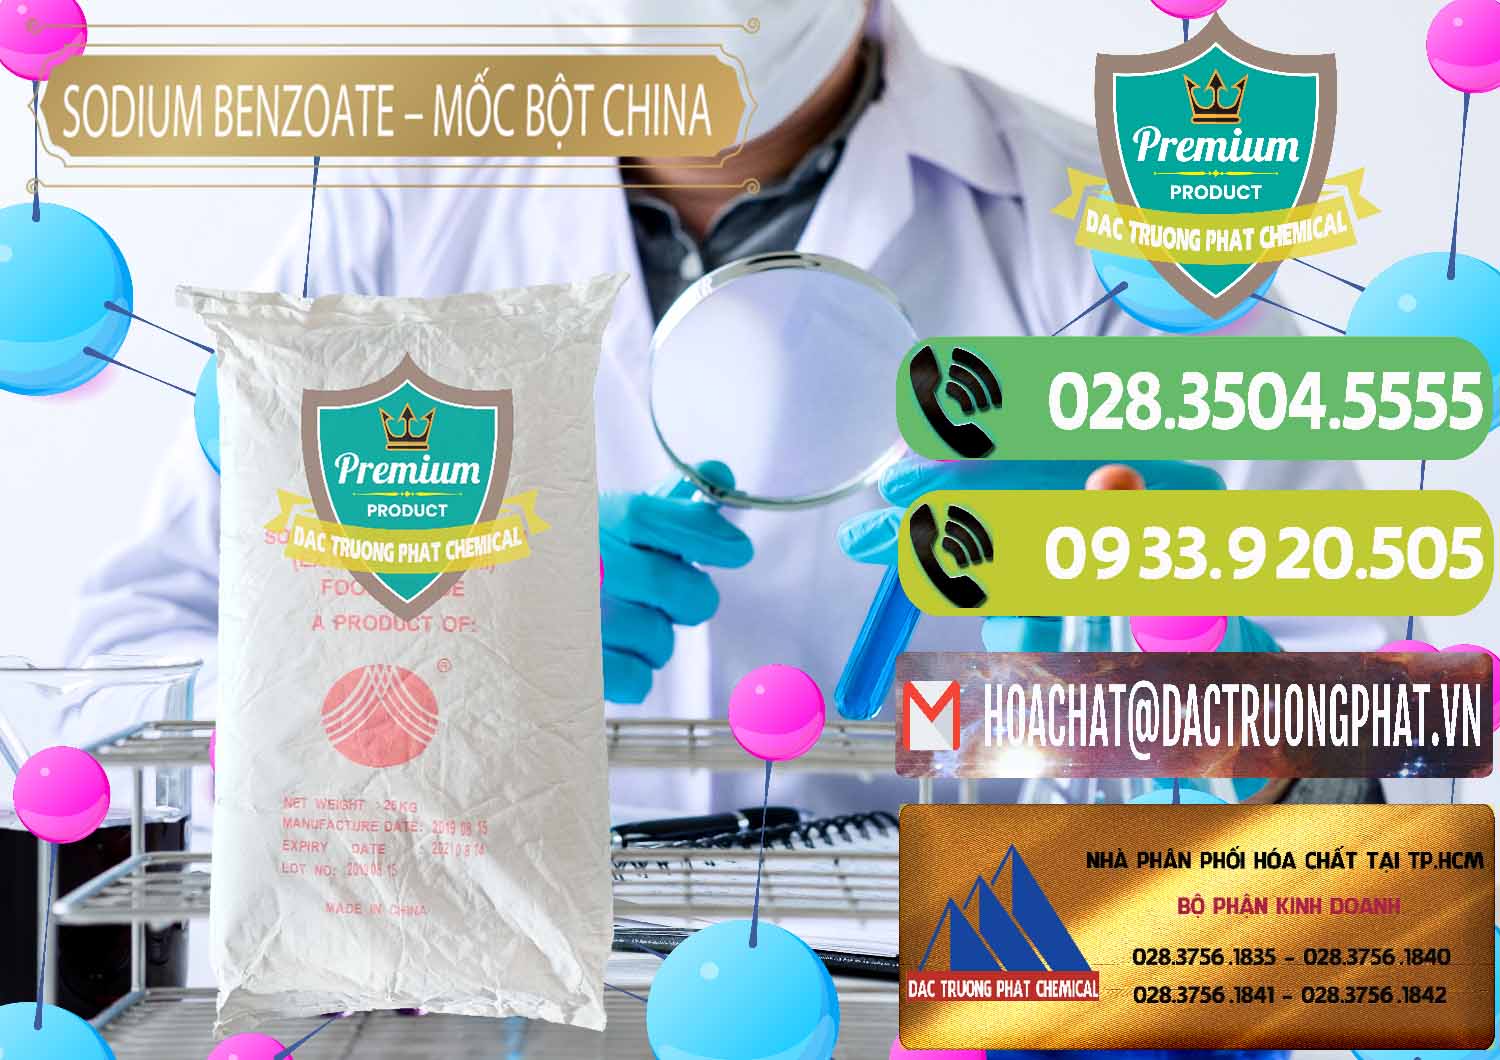 Cung cấp và bán Sodium Benzoate - Mốc Bột Chữ Cam Food Grade Trung Quốc China - 0135 - Chuyên bán và cung cấp hóa chất tại TP.HCM - hoachatmientay.vn